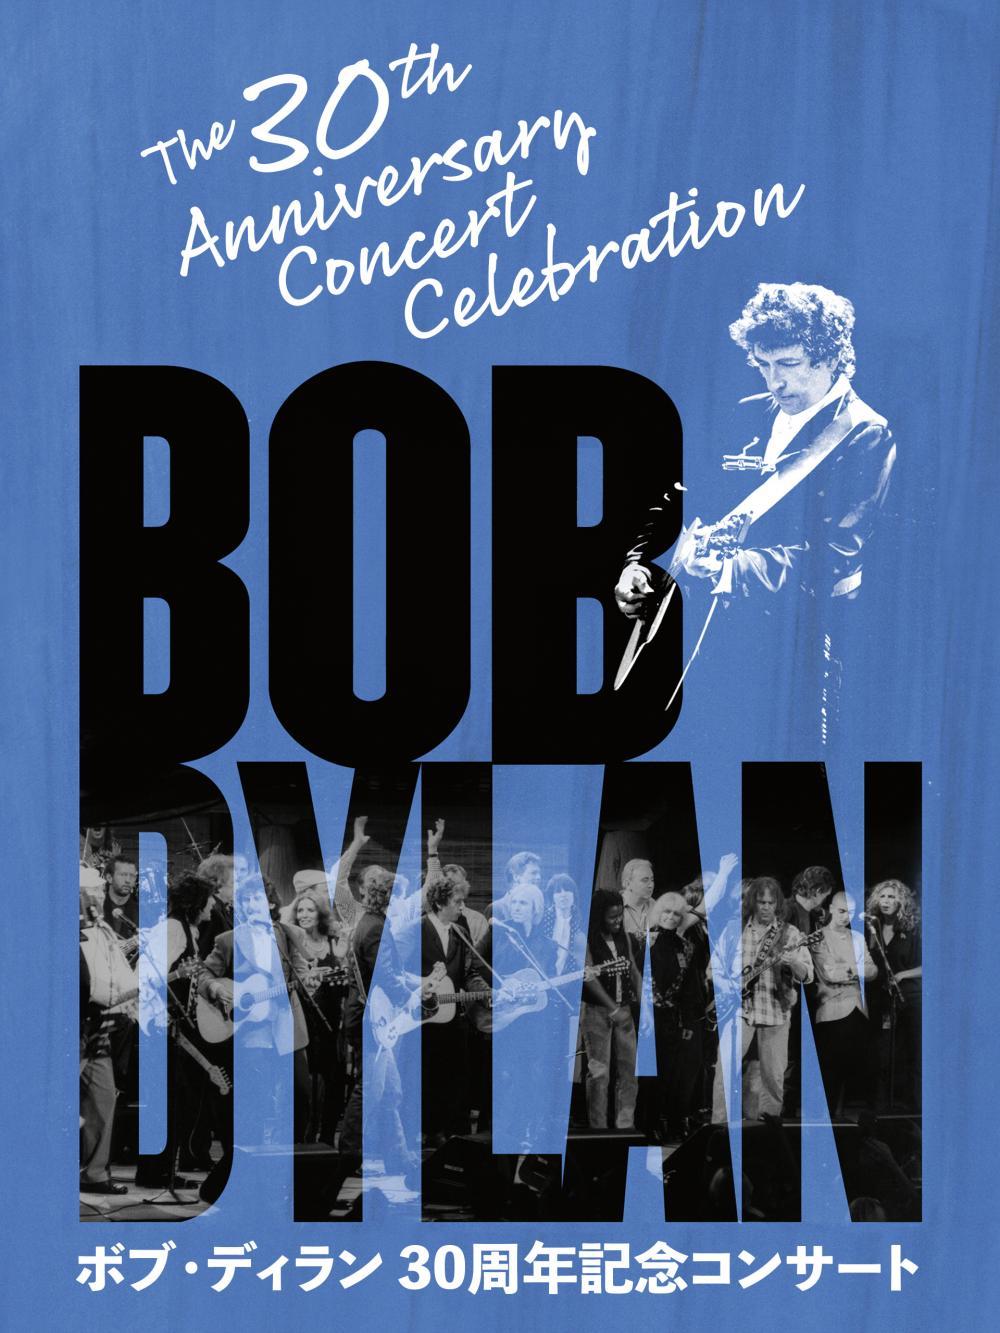 ボブ・ディラン 30周年記念コンサート | ソニー・ピクチャーズ公式